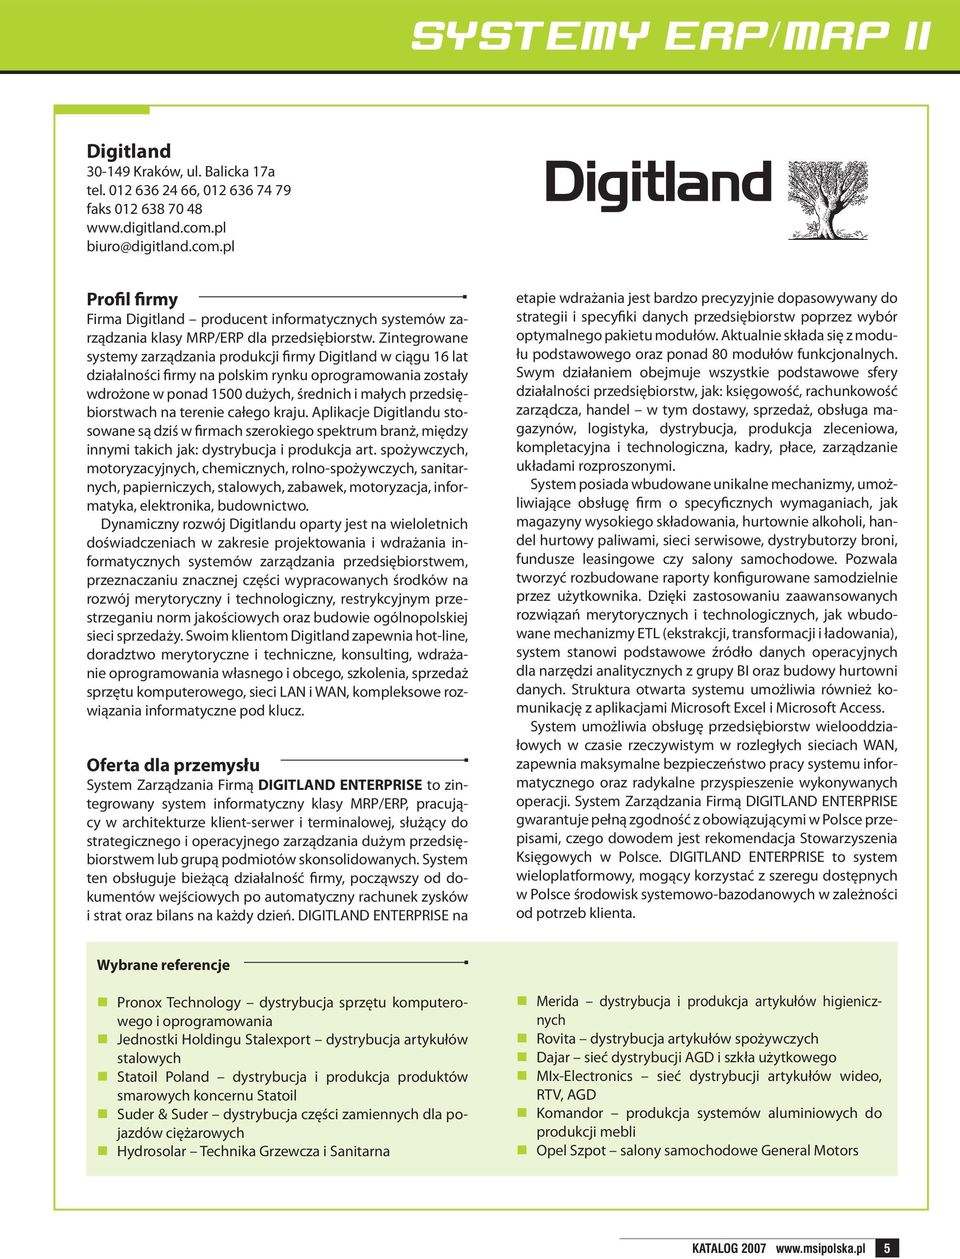 Zintegrowane systemy zarządzania produkcji firmy Digitland w ciągu 16 lat działalności firmy na polskim rynku oprogramowania zostały wdrożone w ponad 1500 dużych, średnich i małych przedsiębiorstwach